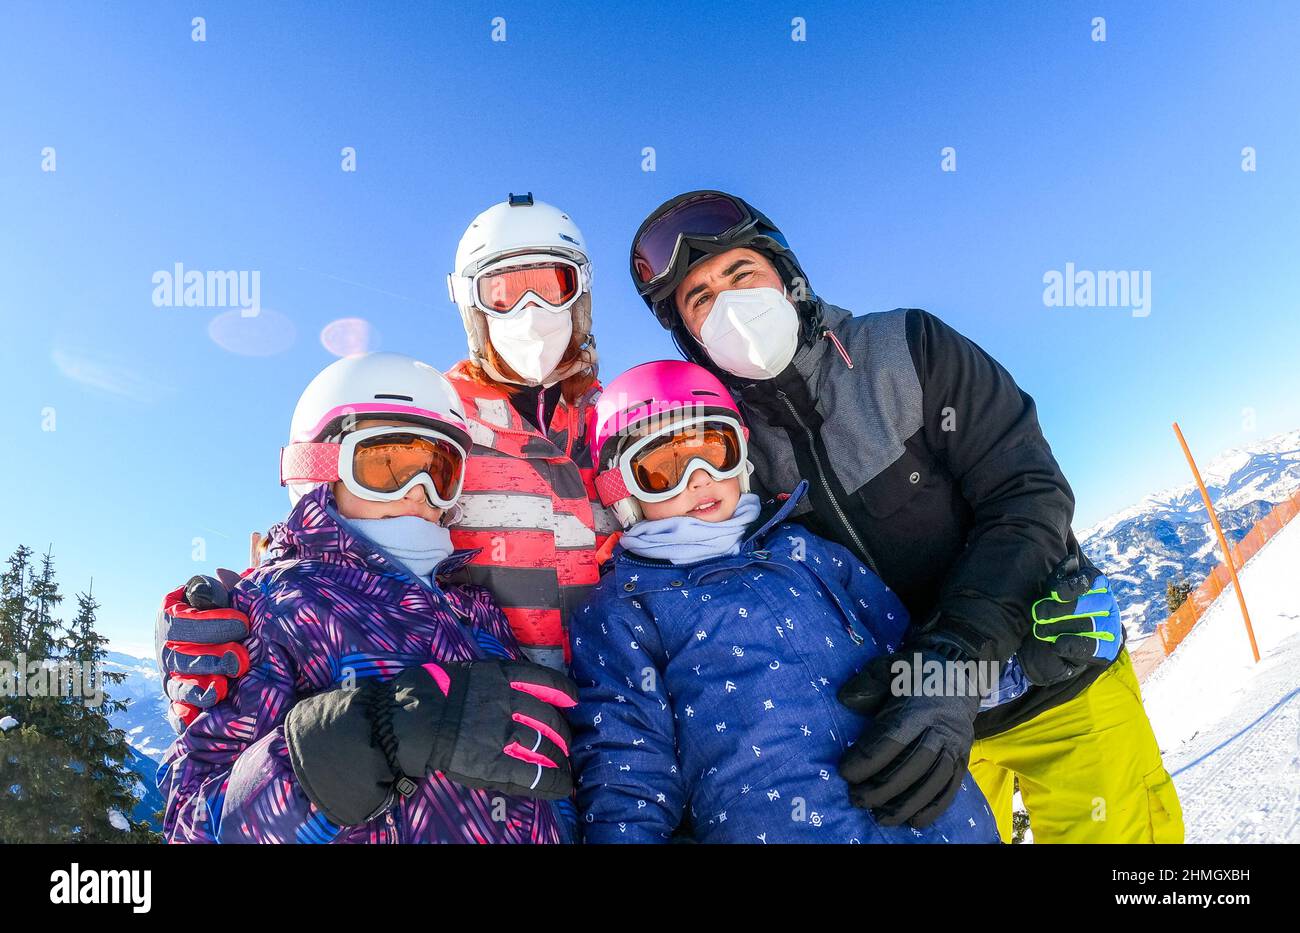 Famille profitant de vacances d'hiver en équipement de ski portant des masques. Famille avec enfants en vacances de ski vêtus de matériel de ski avec casques et porte-skis Banque D'Images